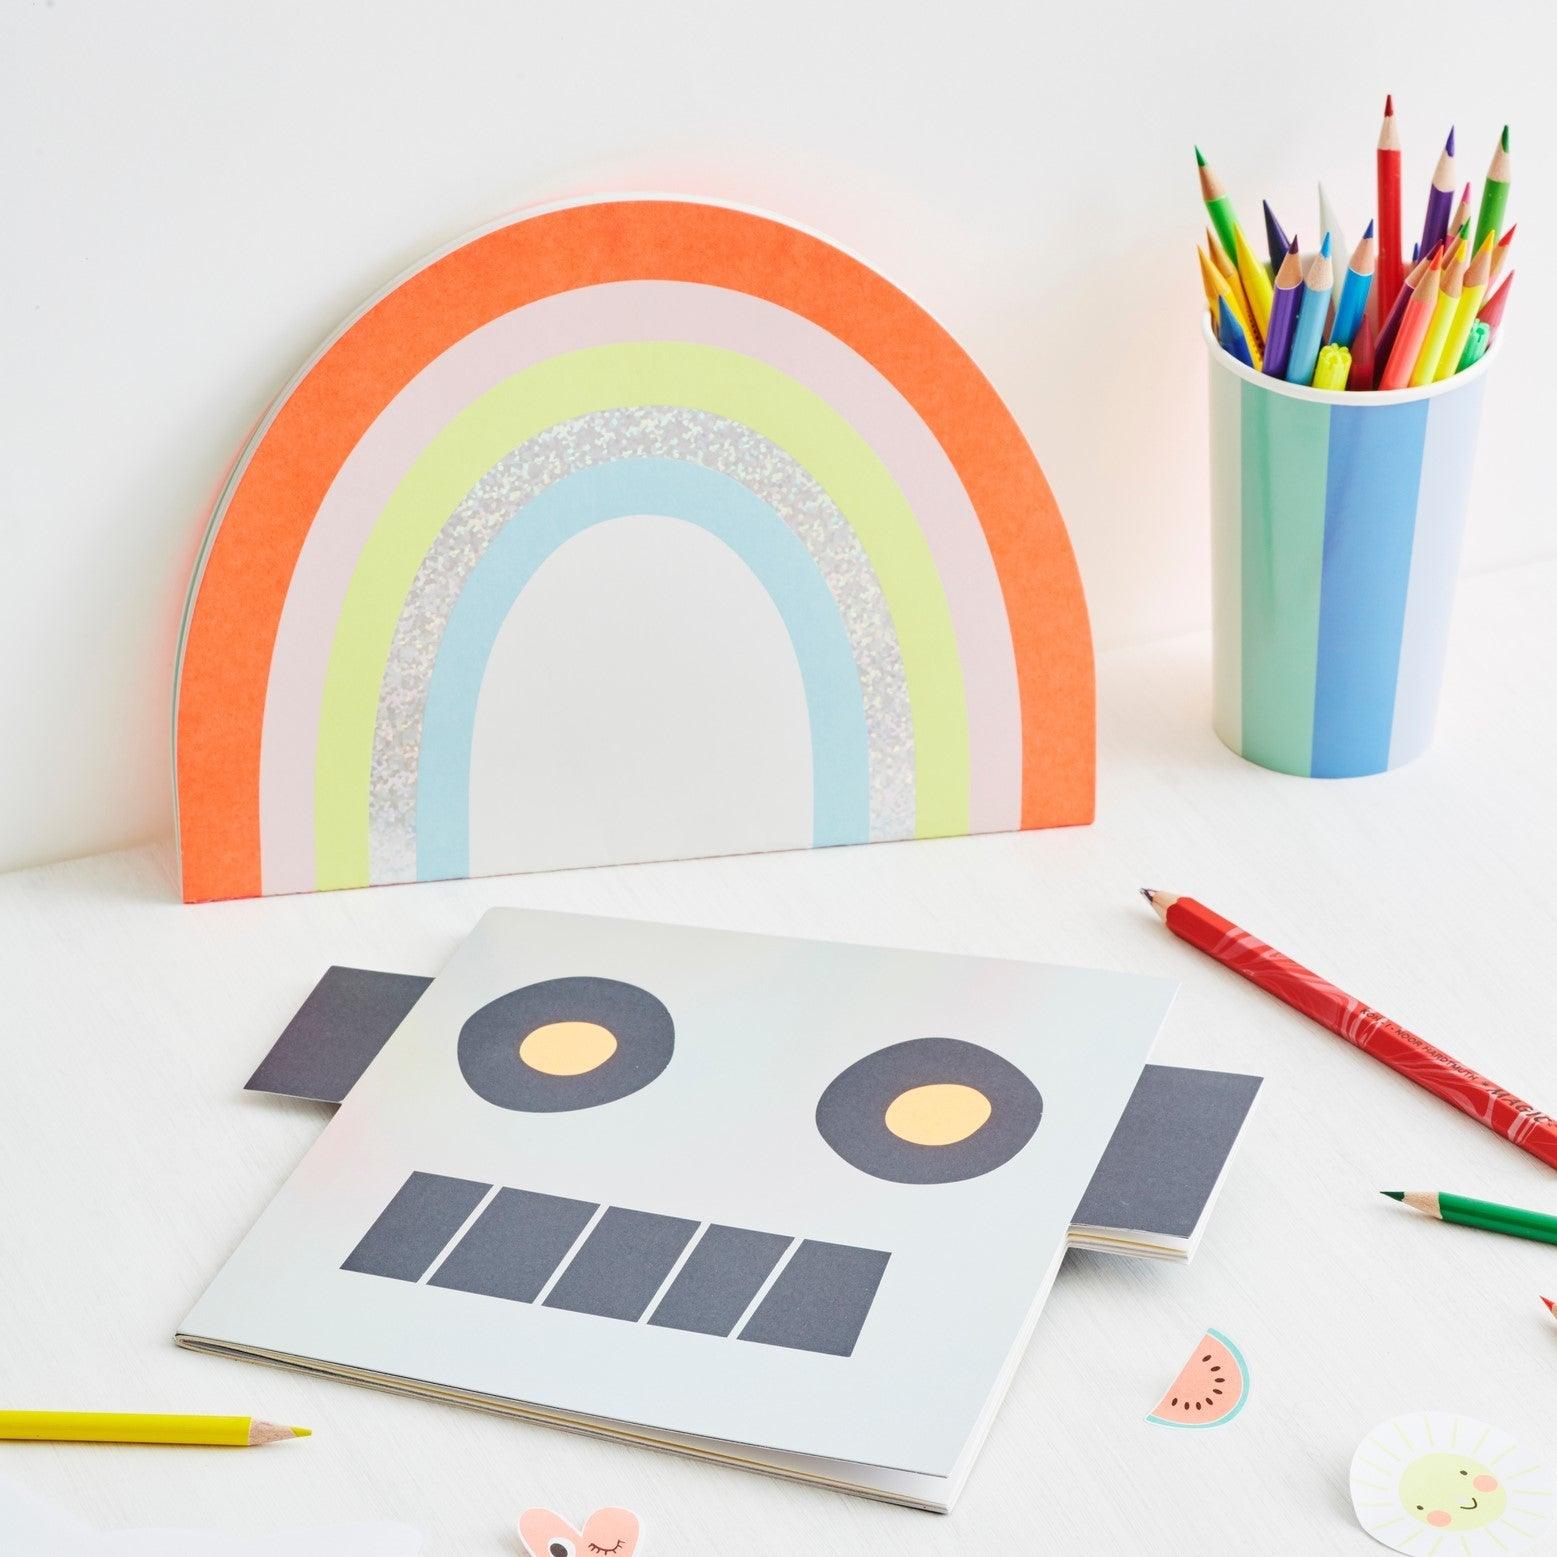 Meri Meri: Sketchbook with Rainbow stickers